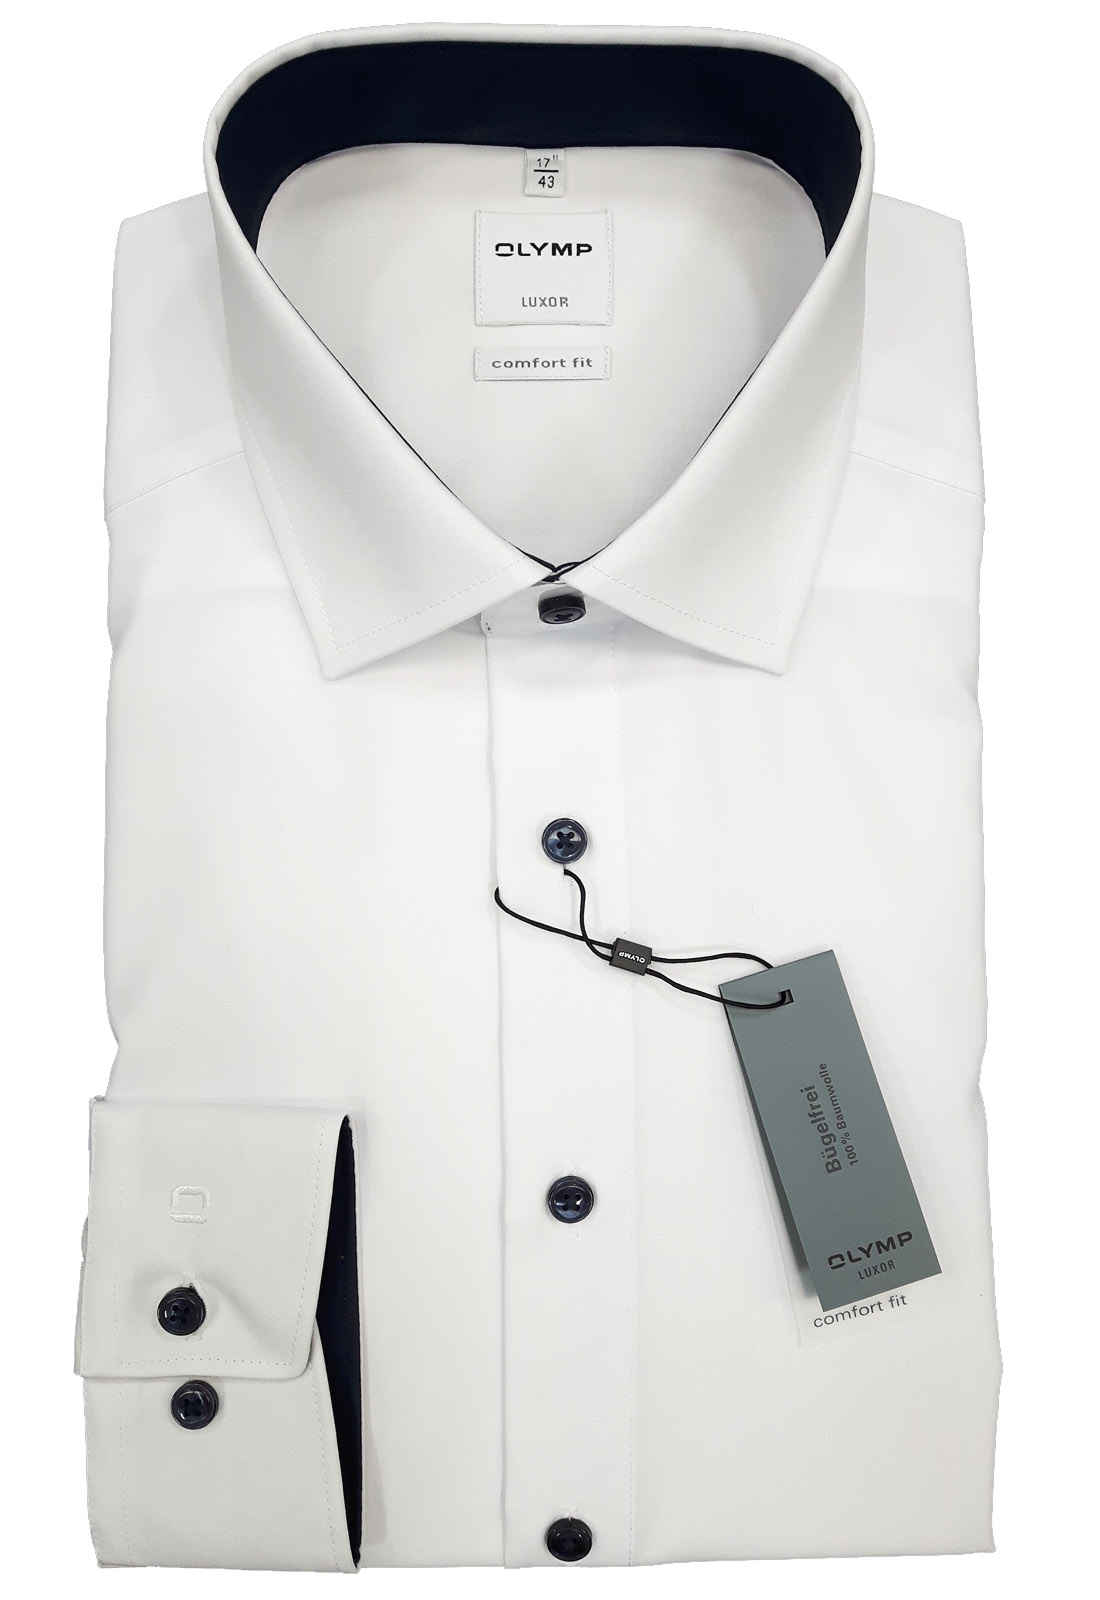 Hemd OLYMP Luxor comfort fit, LA, weiß/marine mit Logo-Bestickung